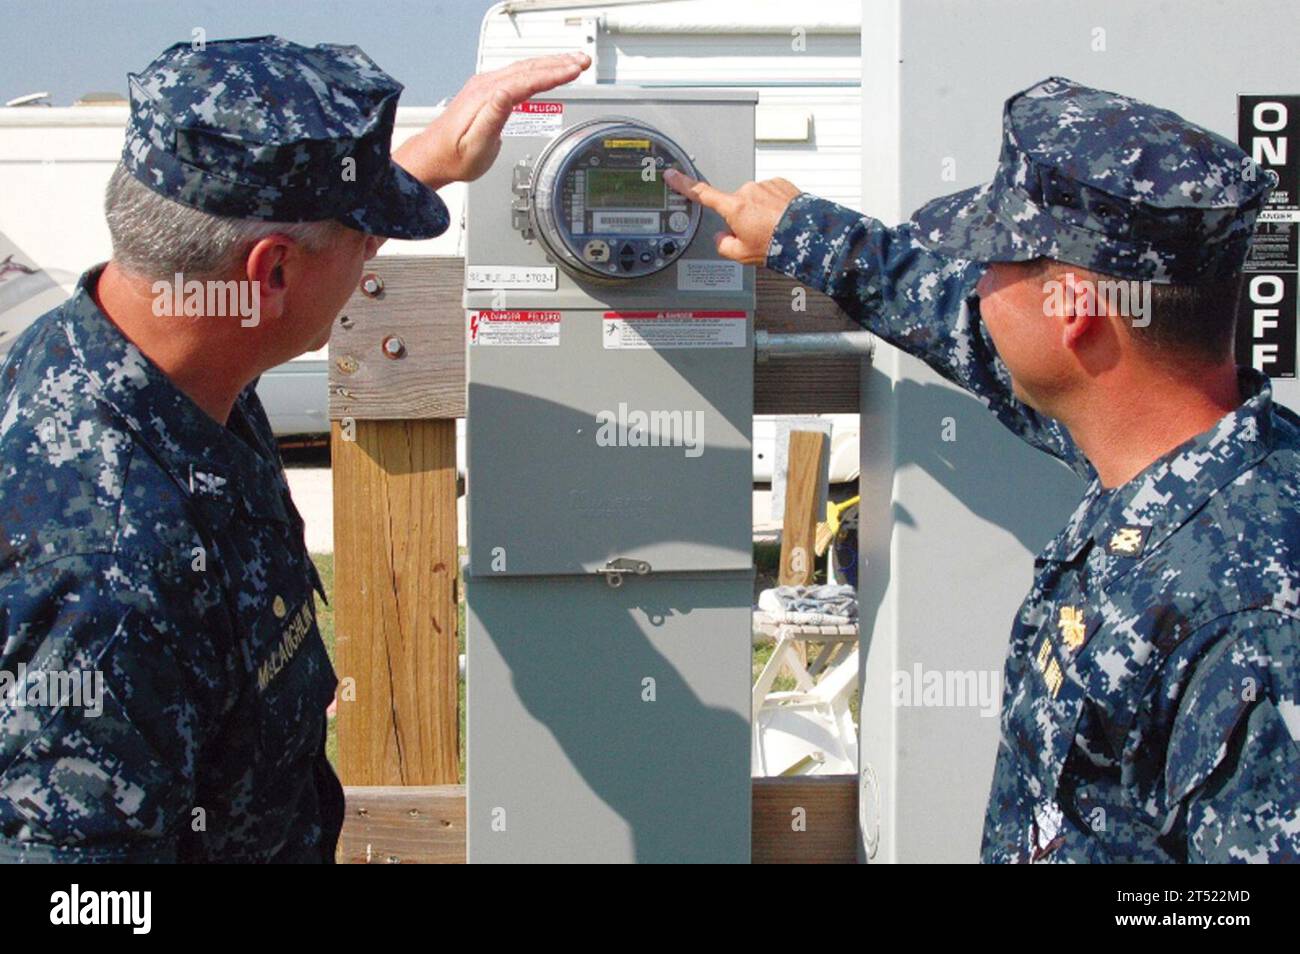 1010287181G-002 KINGSVILLE, Texas (28. Oktober 2010) Captain Mark McLaughlin, Befehlshaber der Naval Air Station Kingsville, links, hört als Offizier für öffentliche Arbeiten Cmdr. Troy Hamilton erläutert, wie das Programm „Intelligente Zähler“ der Advanced Metering Infrastructure funktioniert. Die Messgeräte helfen dem Befehl, den Stromverbrauch zu verfolgen und den Energieverbrauch zu steuern. Kingsville war das erste Kommando der Navy Region Southeast, das die intelligenten Zähler installierte, als der erste Zähler im Wohnmobilpark der Luftstation installiert wurde. Das Kommando plant, 158 intelligente Zähler in der Basis zu installieren. (U.S. Navy Stockfoto